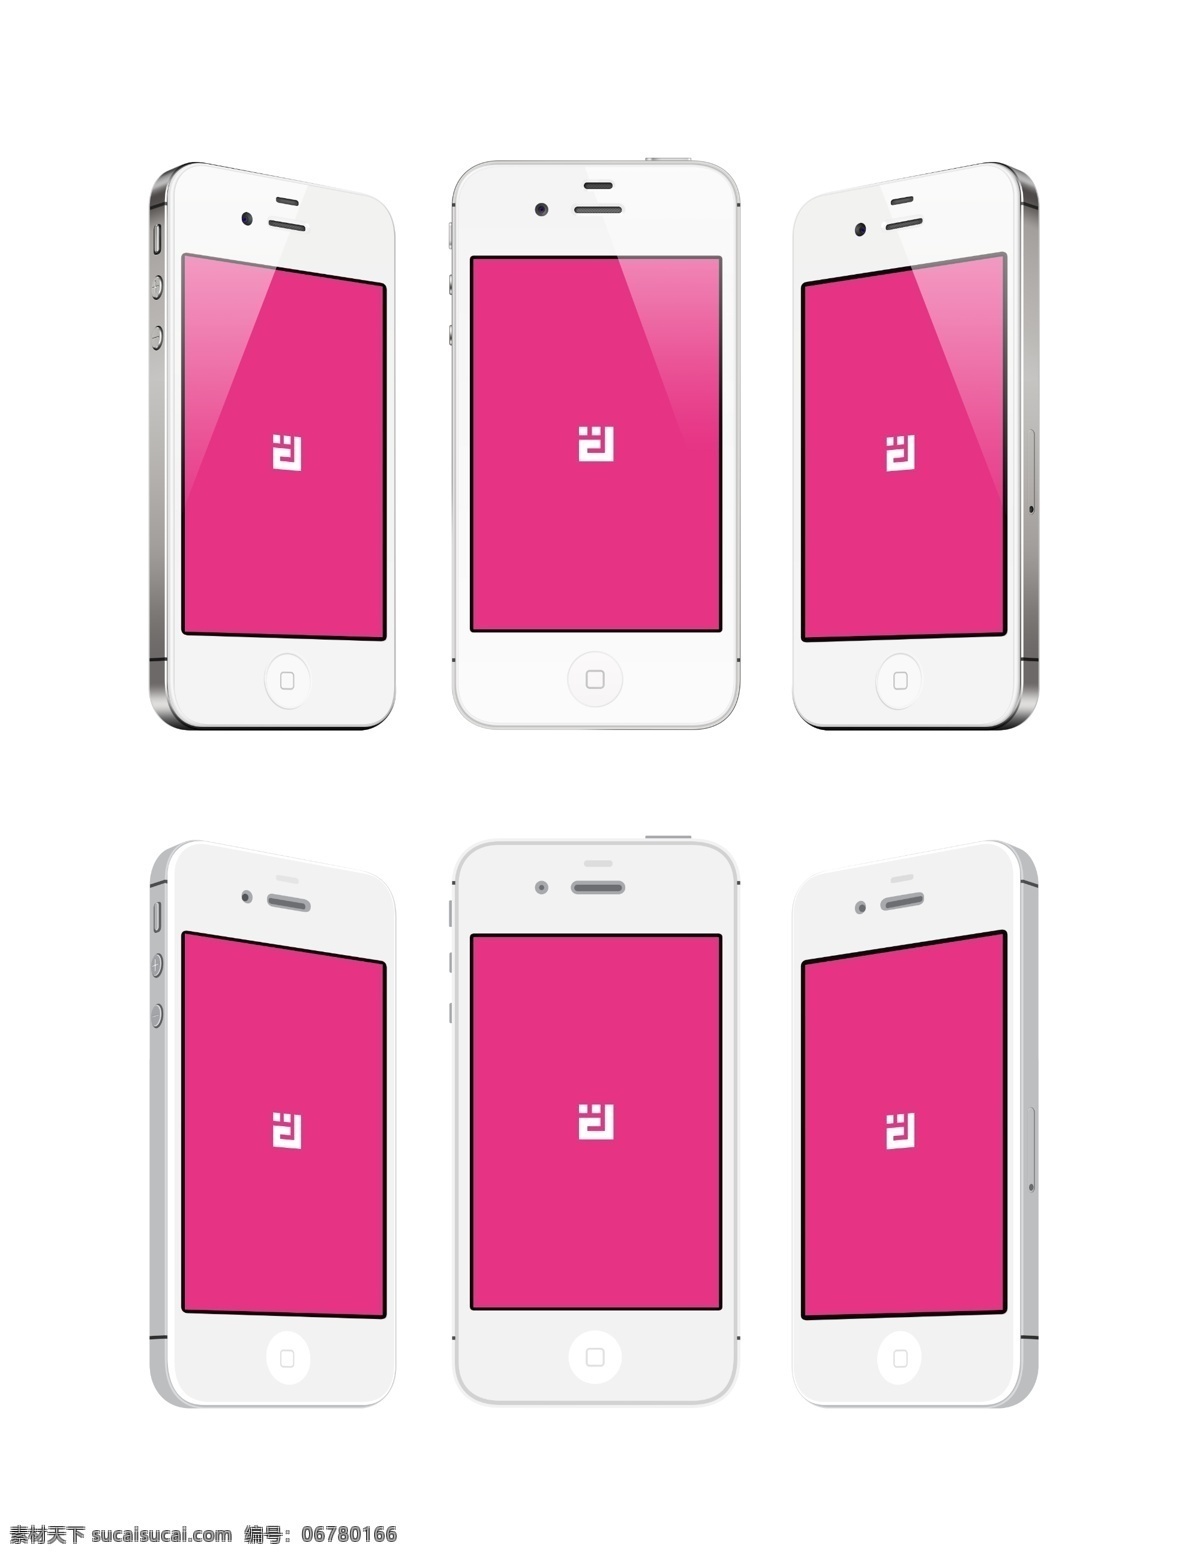 苹果 iphone4s 苹果手机 智能手机 触屏手机 iphone 时尚 旗舰手机 美国 手机 通信器材 现代科技 数码产品 白色